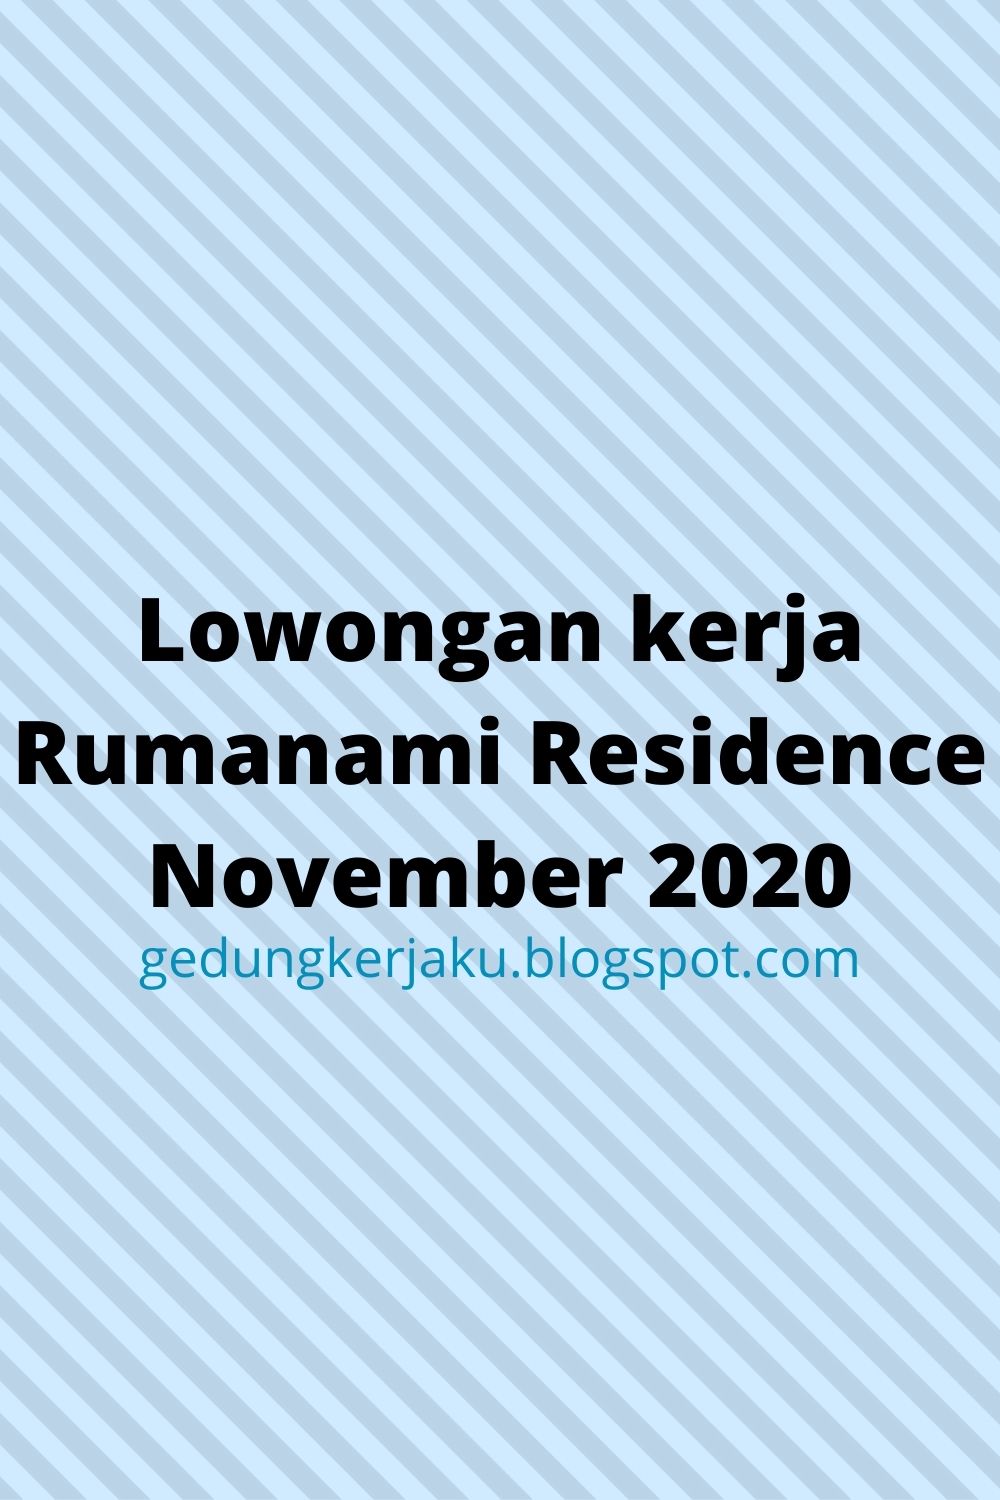 Lowongan kerja Rumanami Residence November 2020